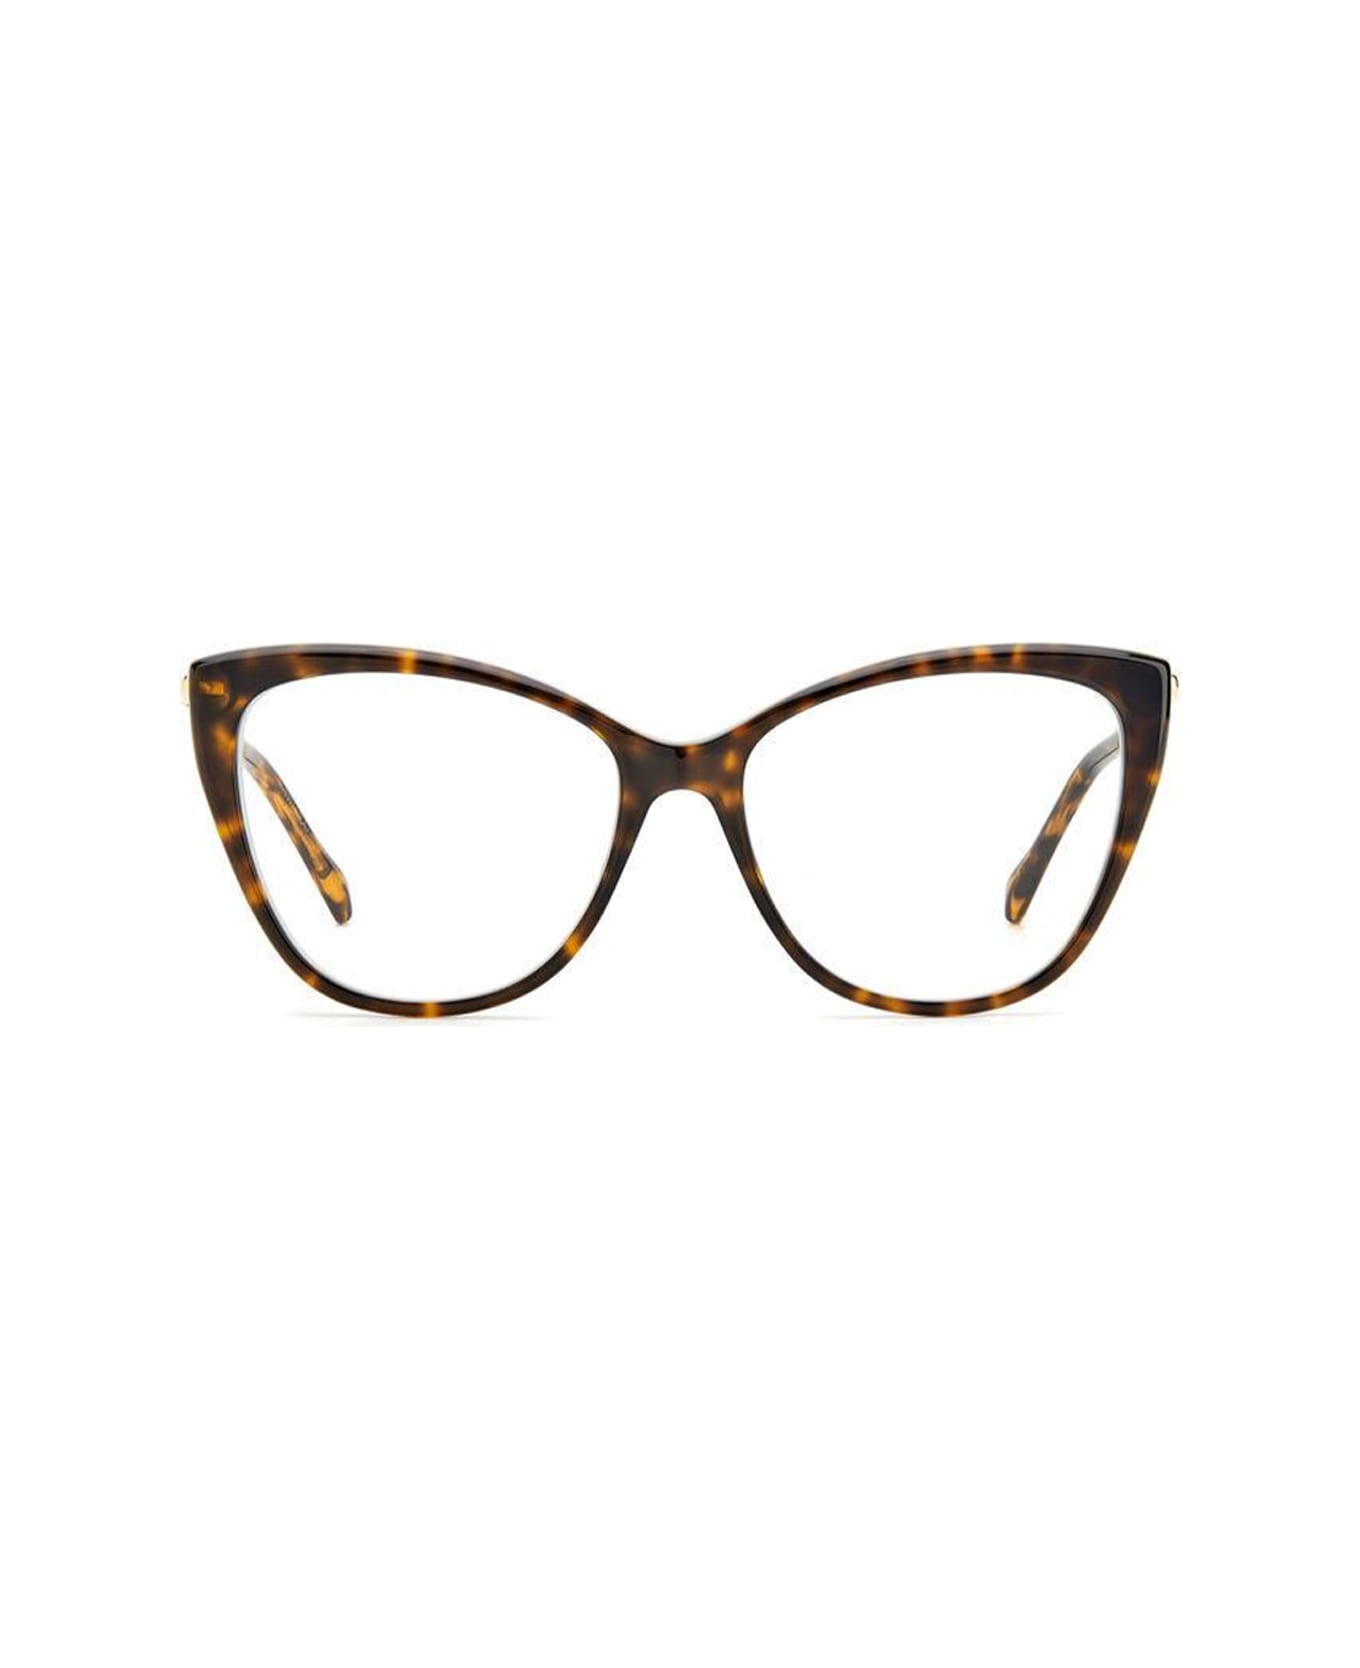 Jimmy Choo Eyewear Jc331 086/16 Glasses - Marrone